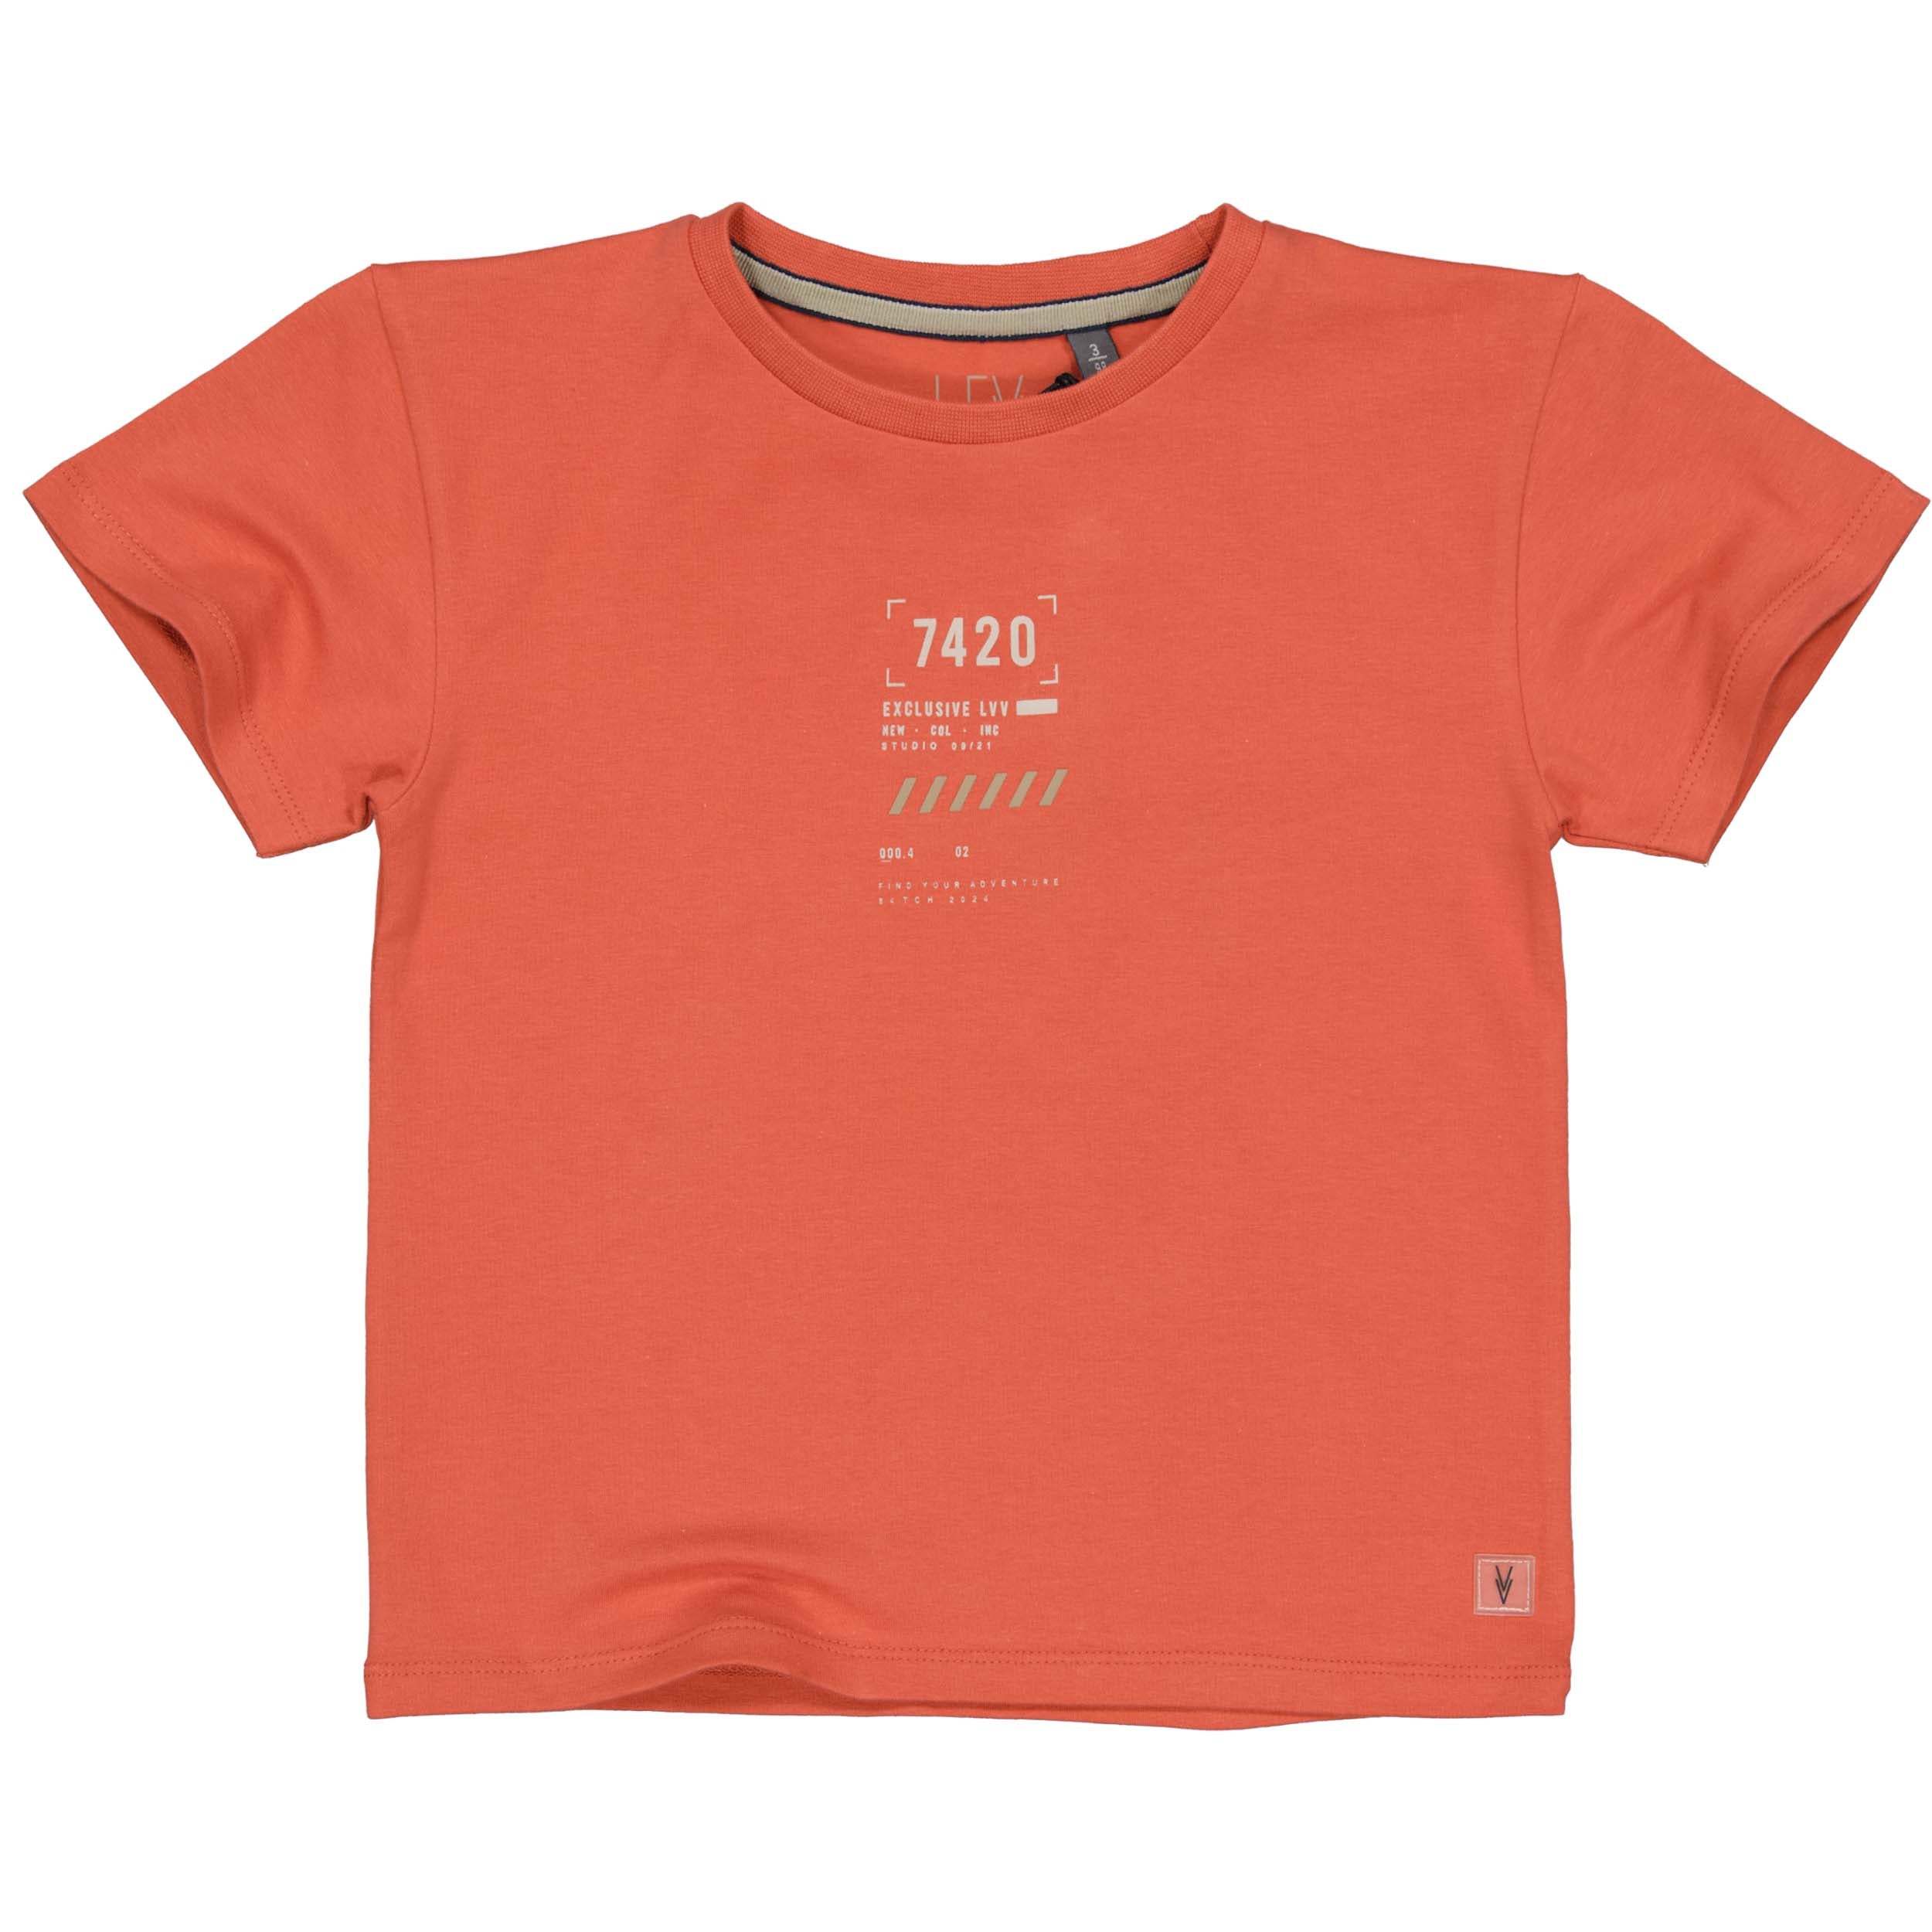 Jongens Oversized Shortsleeve MACELS241 van Little Levv in de kleur Orange Red in maat 128.